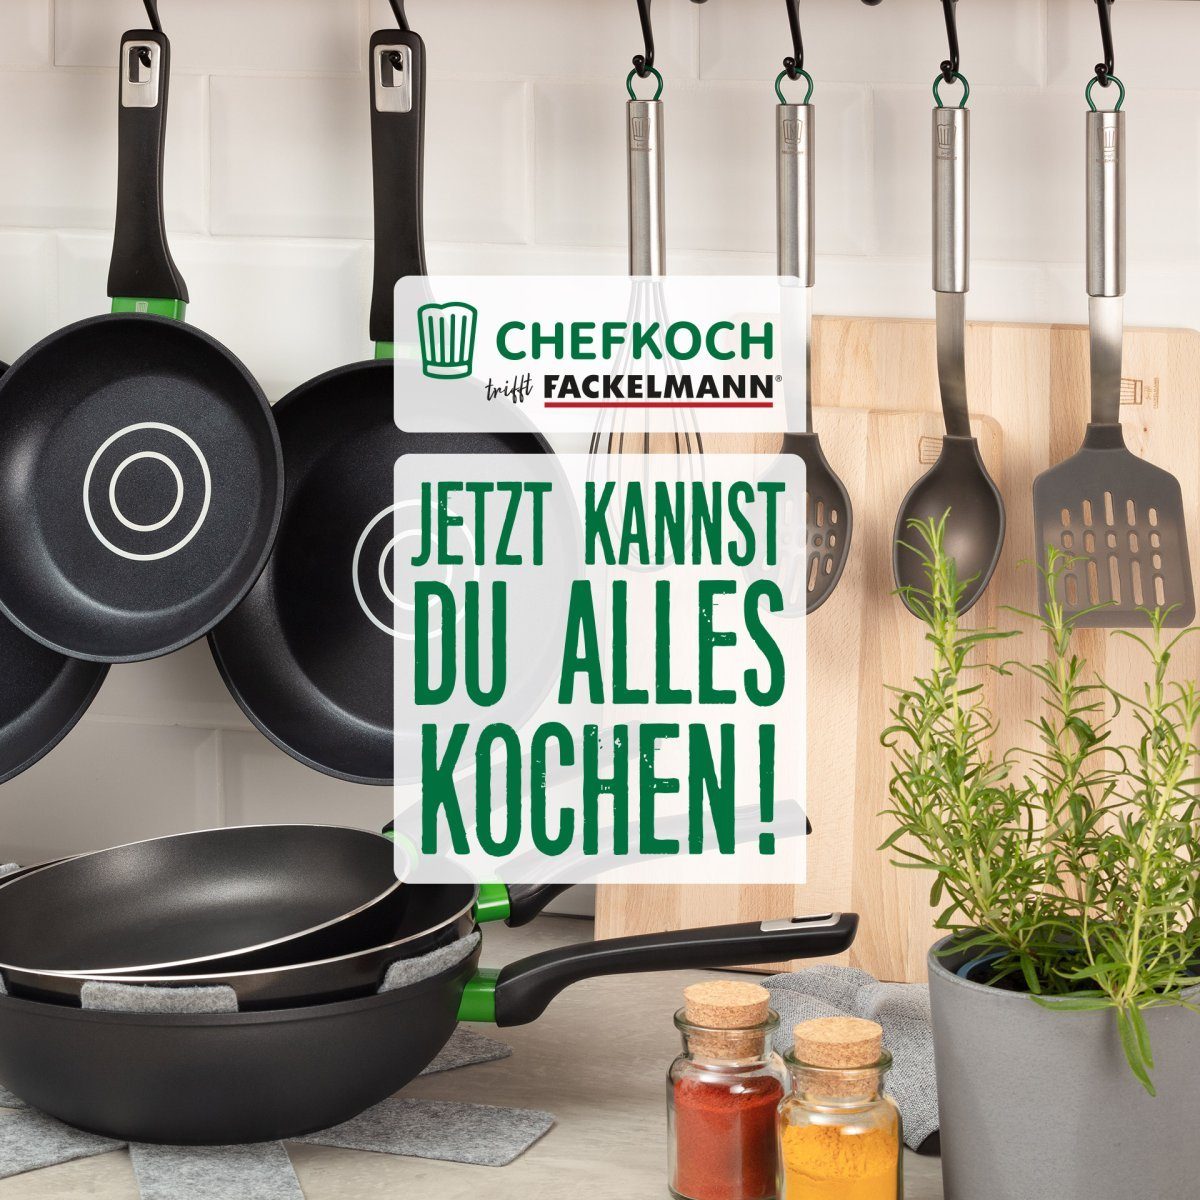 Kochbesteck-Set Fackelmann Chefkoch trifft München